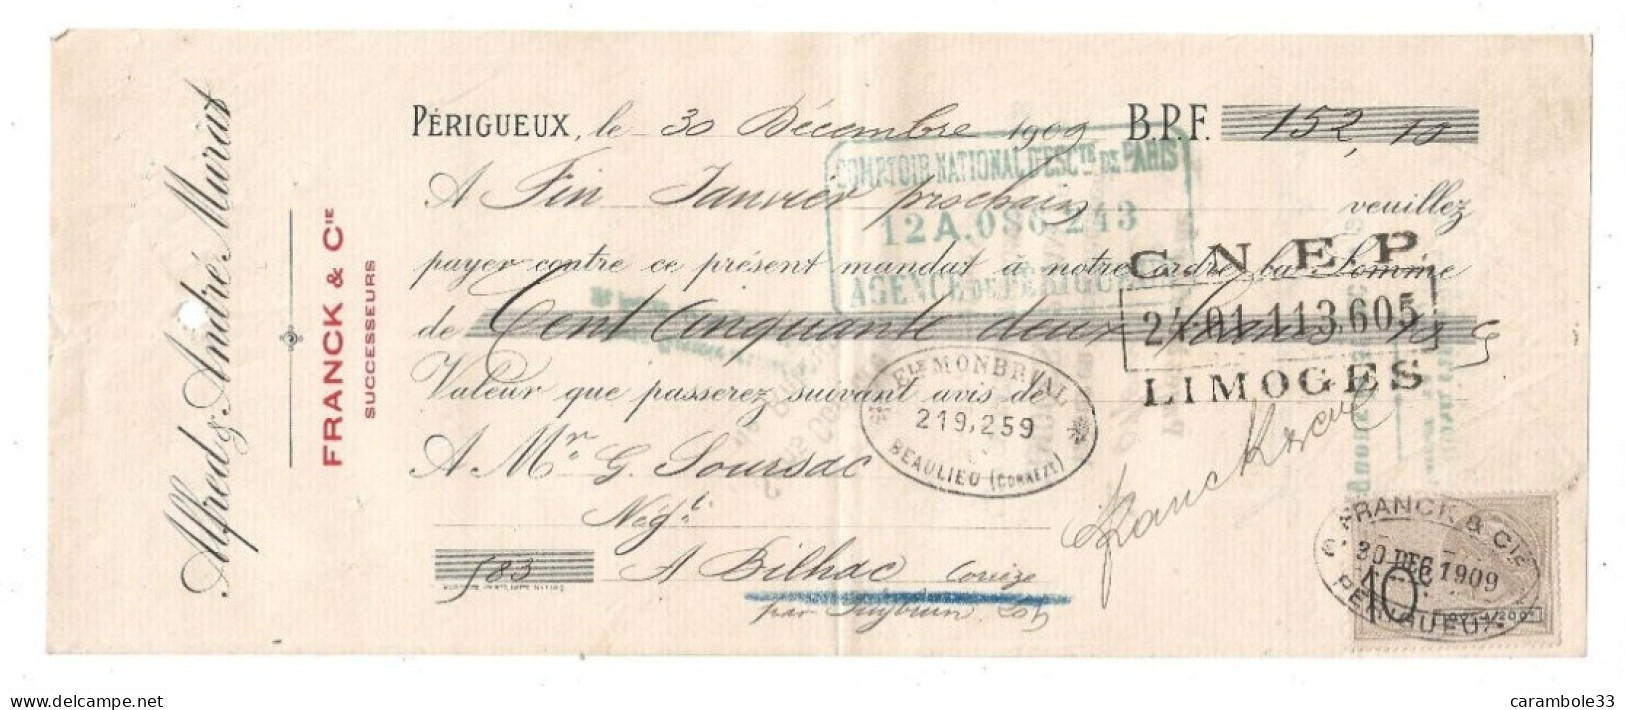 Lettre De Change   Alfred ,Andre Murat  PERIGUEUX 1909 Pour Sourzac  Bilhac Corrèze  (1761) - Lettres De Change